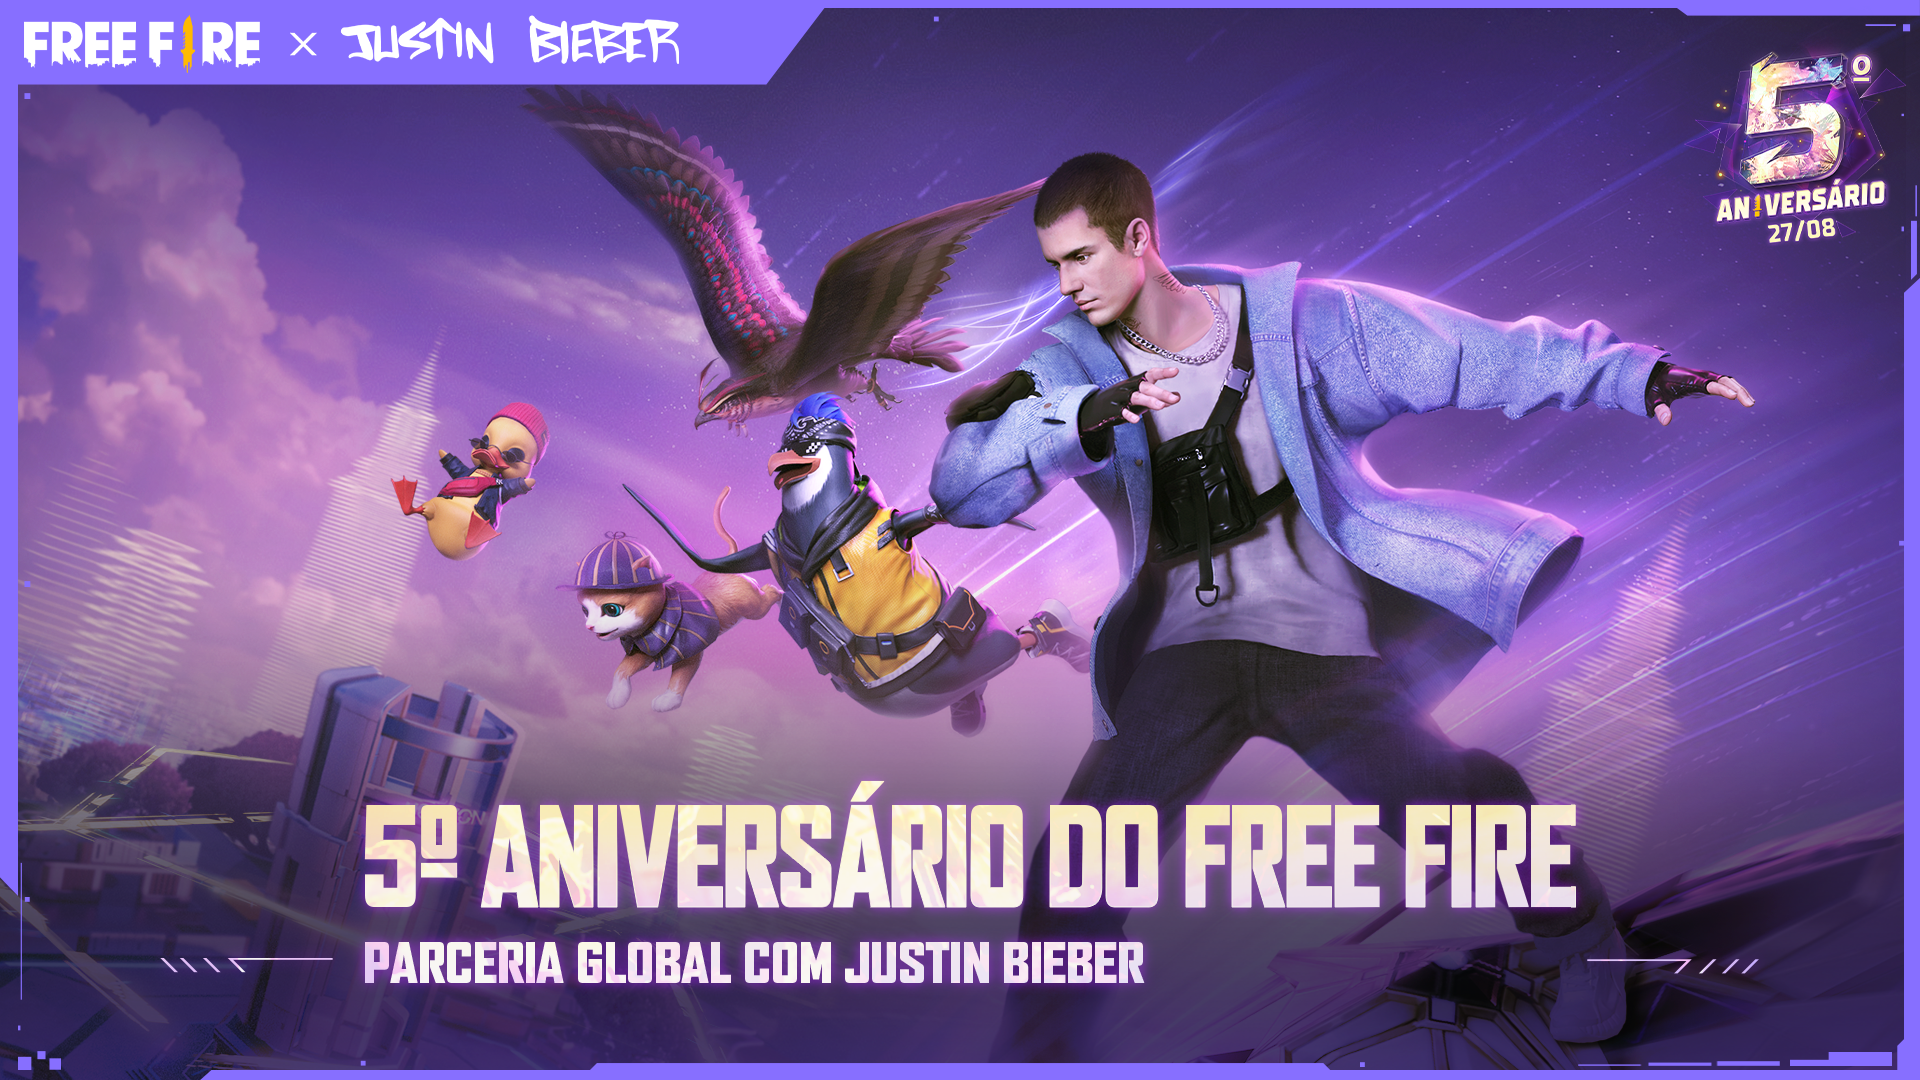 Free Fire celebra 5 anos com 1º show de Justin Bieber no jogo